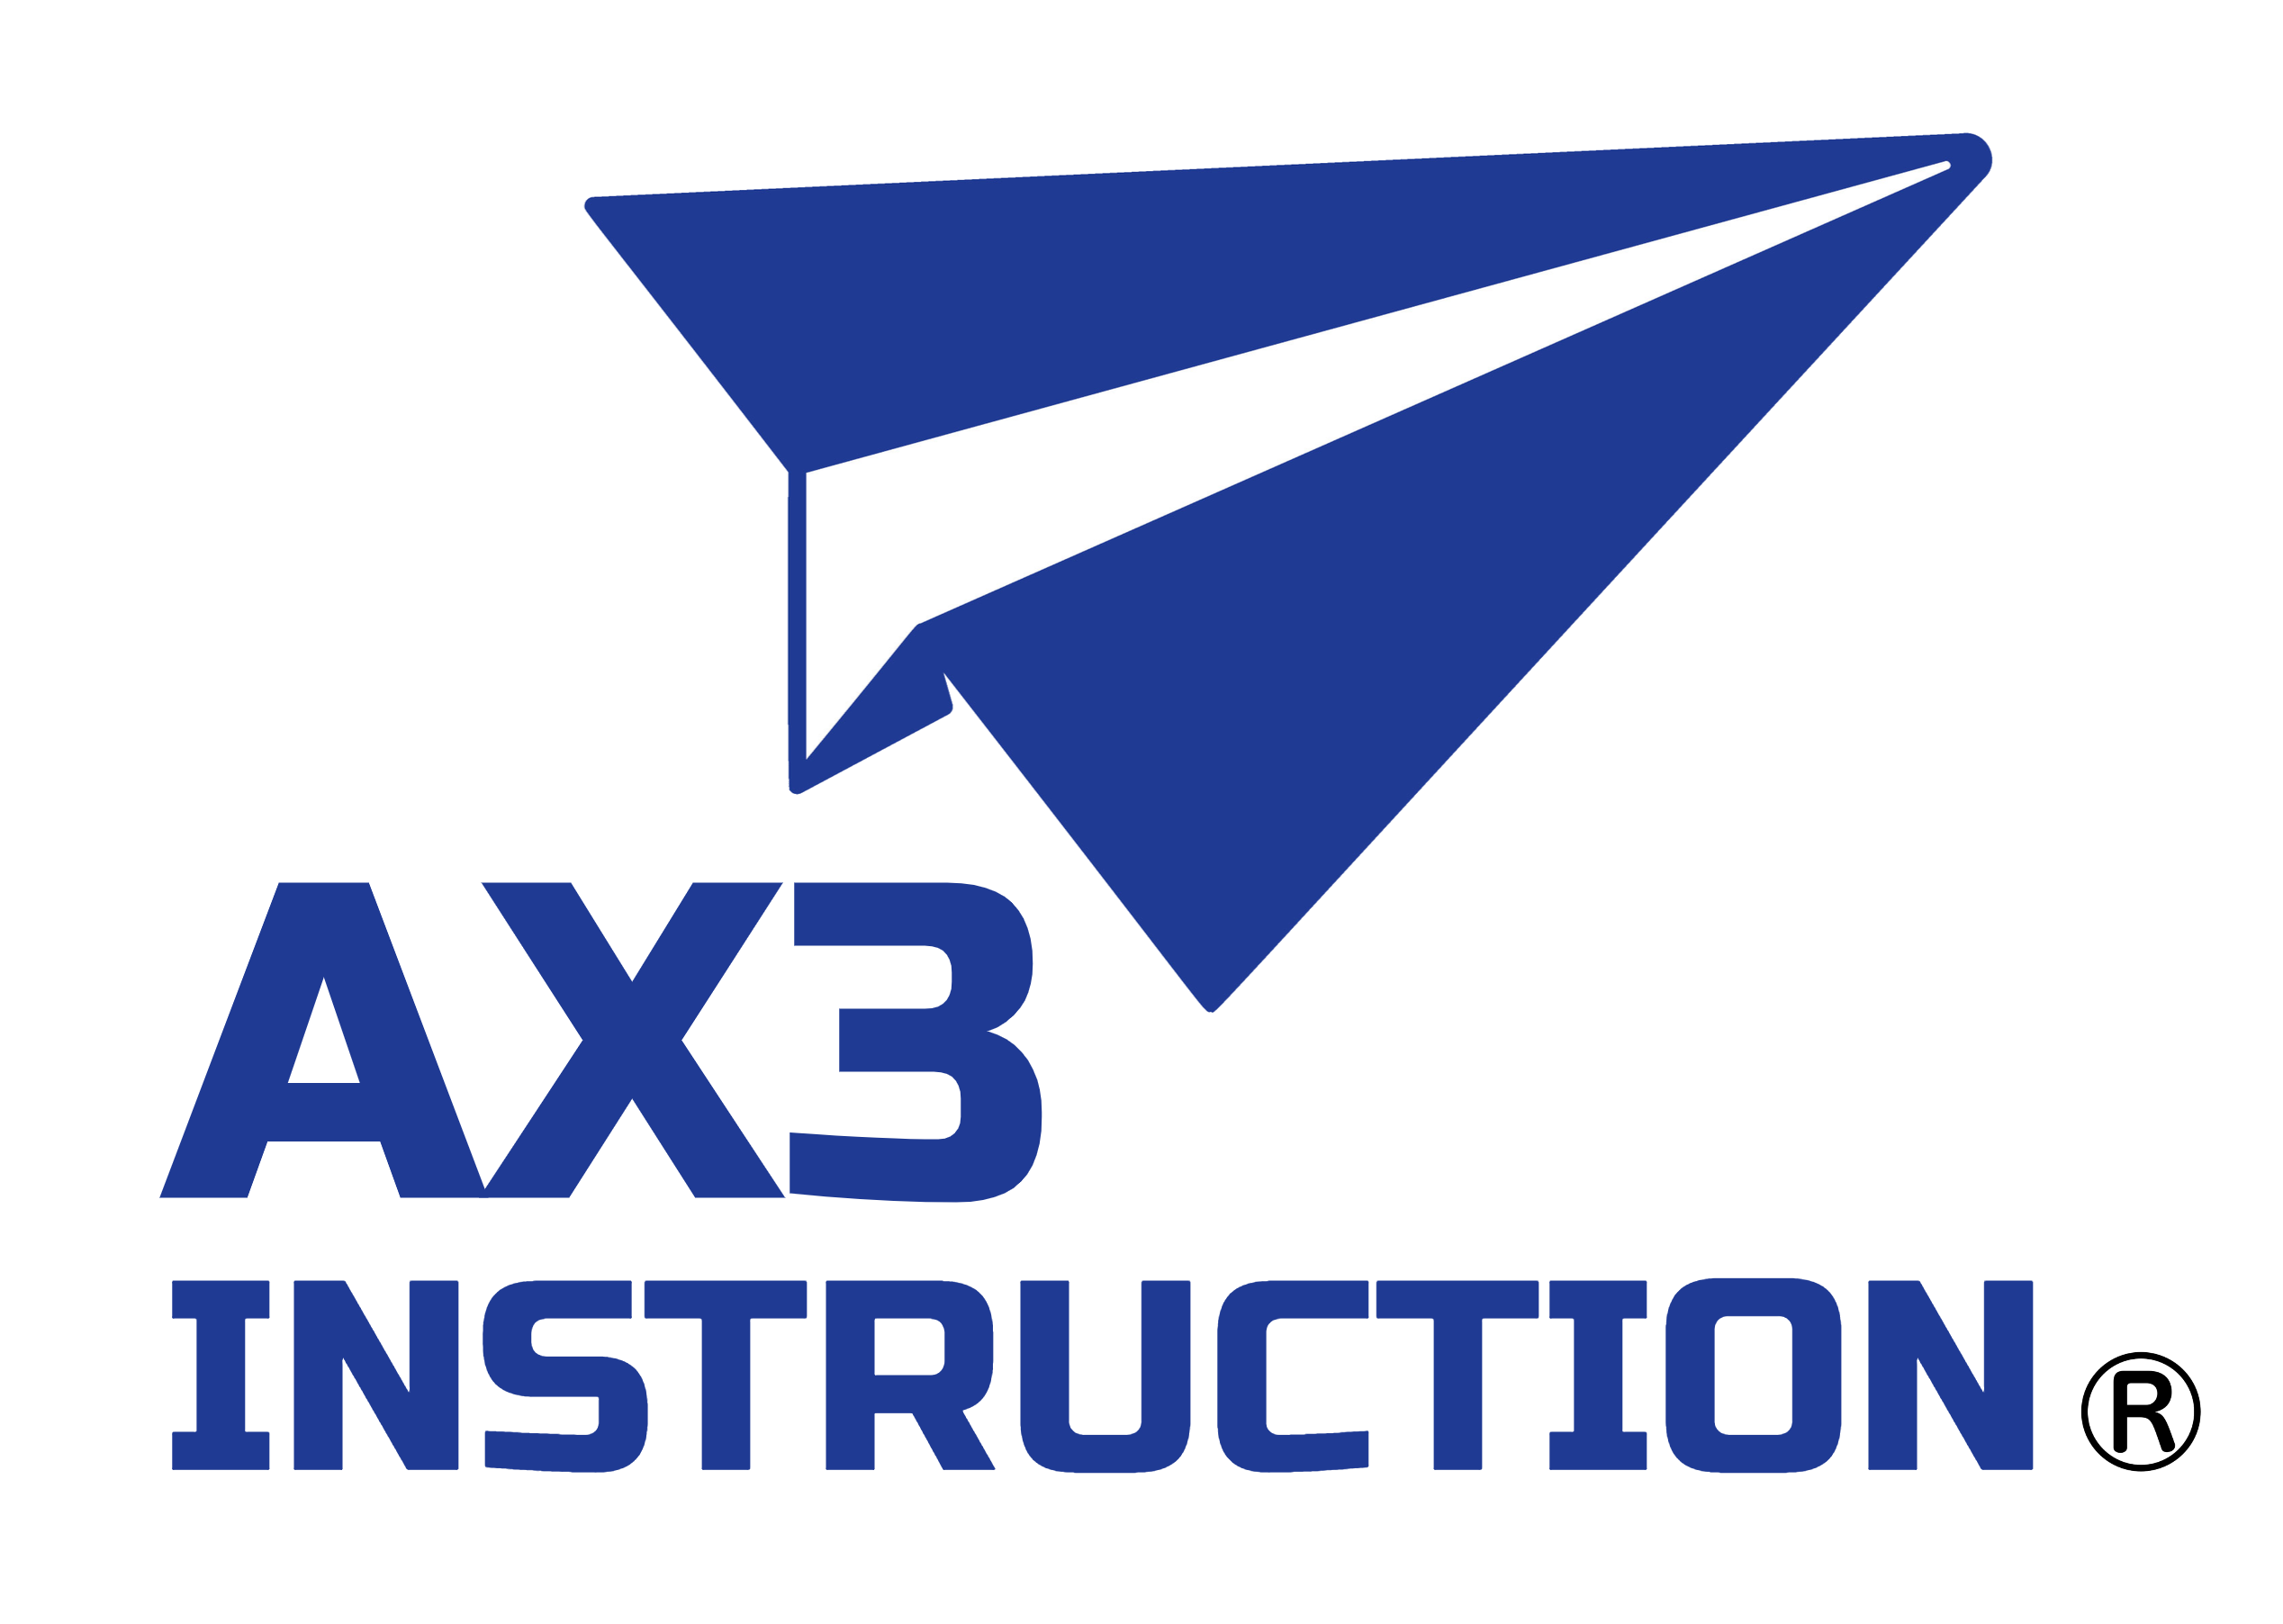 AX3 INSTRUCTION